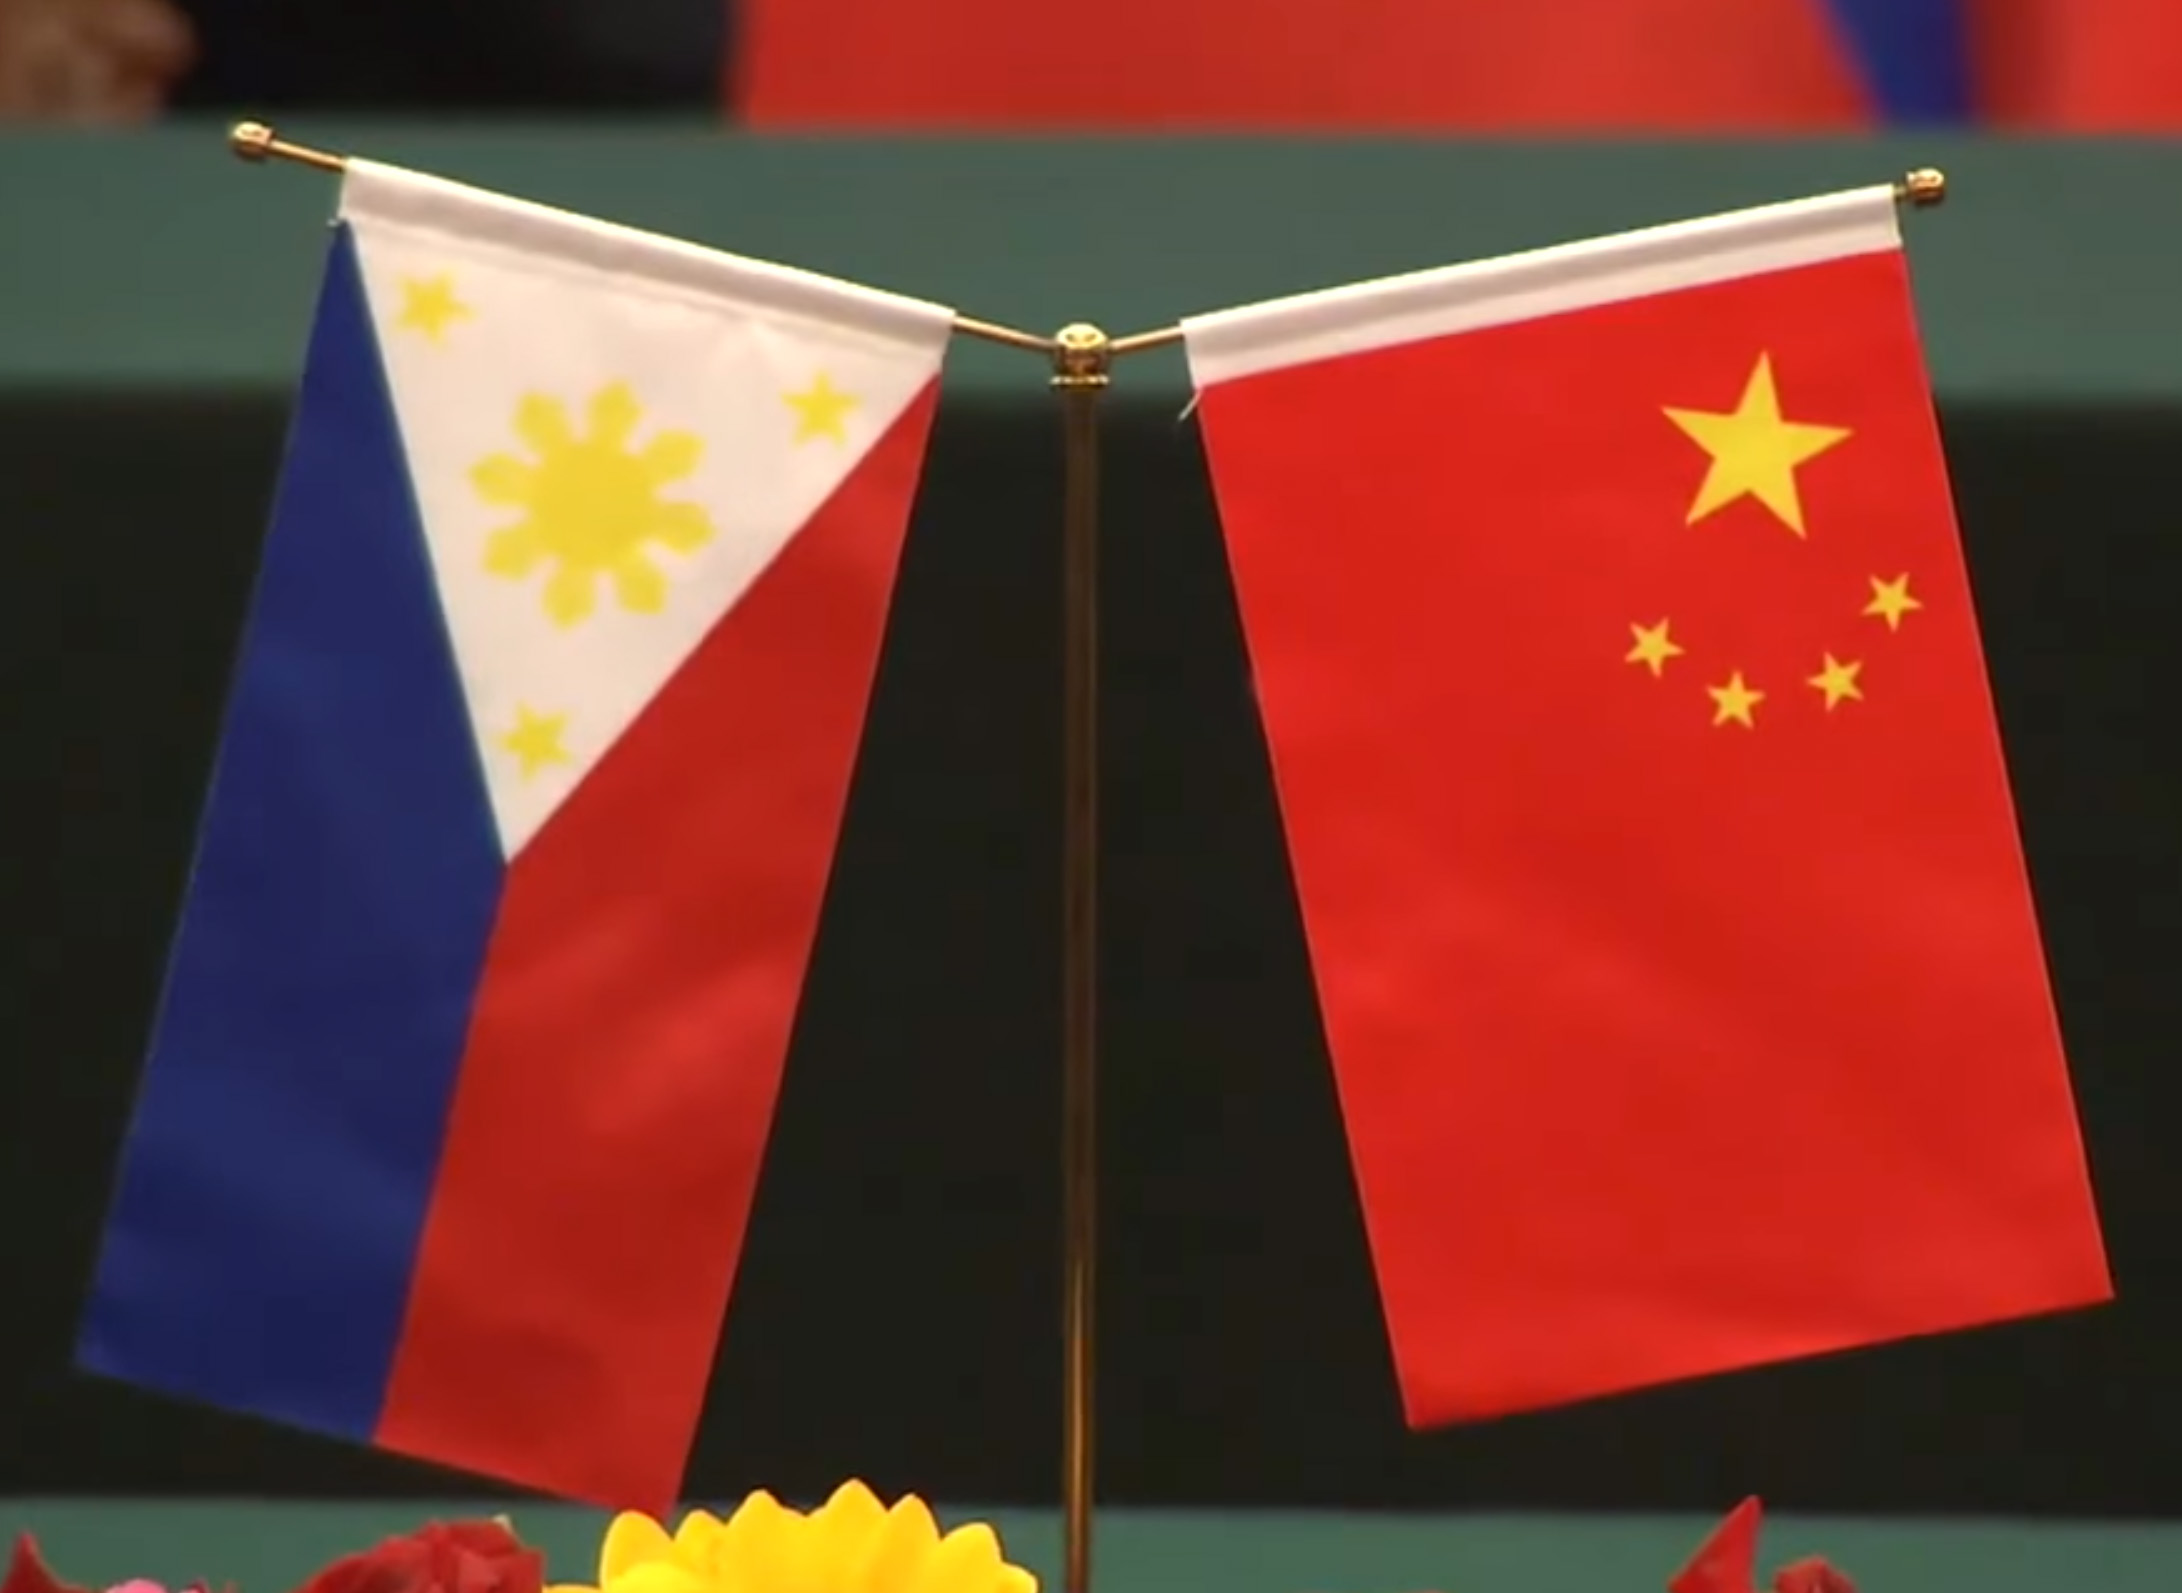 Thay đổi chính sách hướng sang Trung Quốc – Philippines được gì?